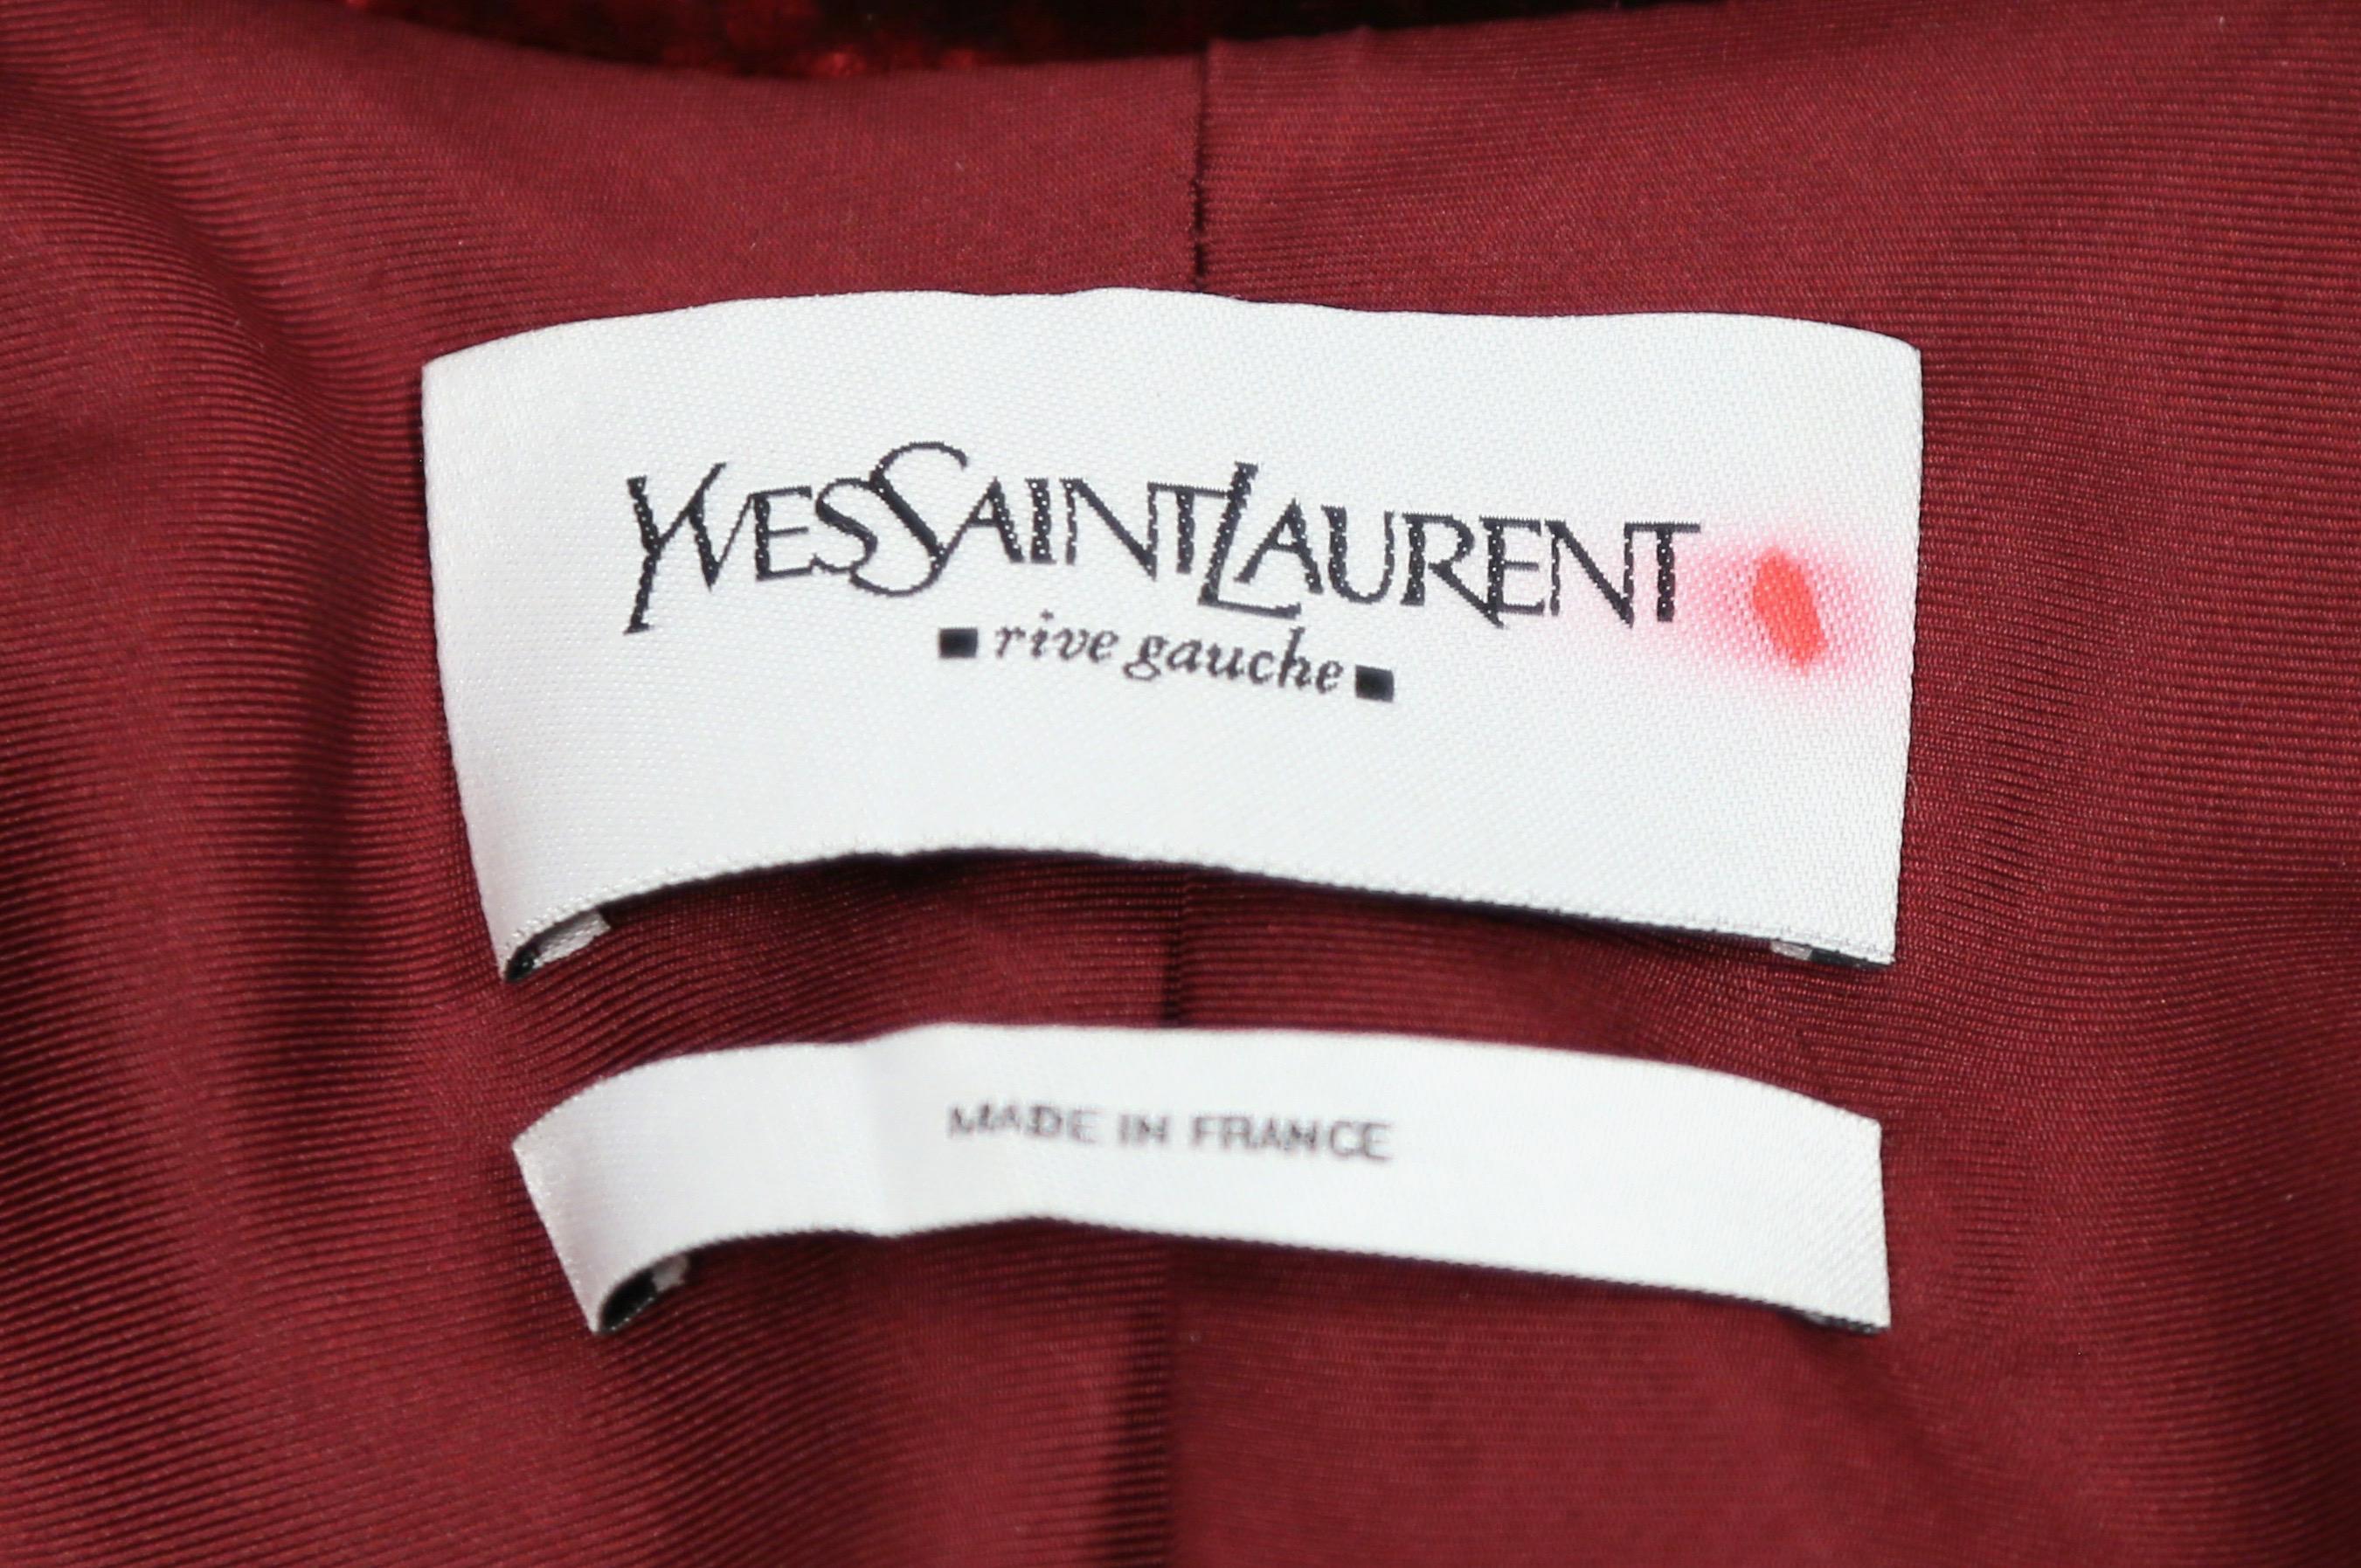 2002 TOM FORD for YVES SAINT LAURENT burgundy velvet runway suit For Sale 1